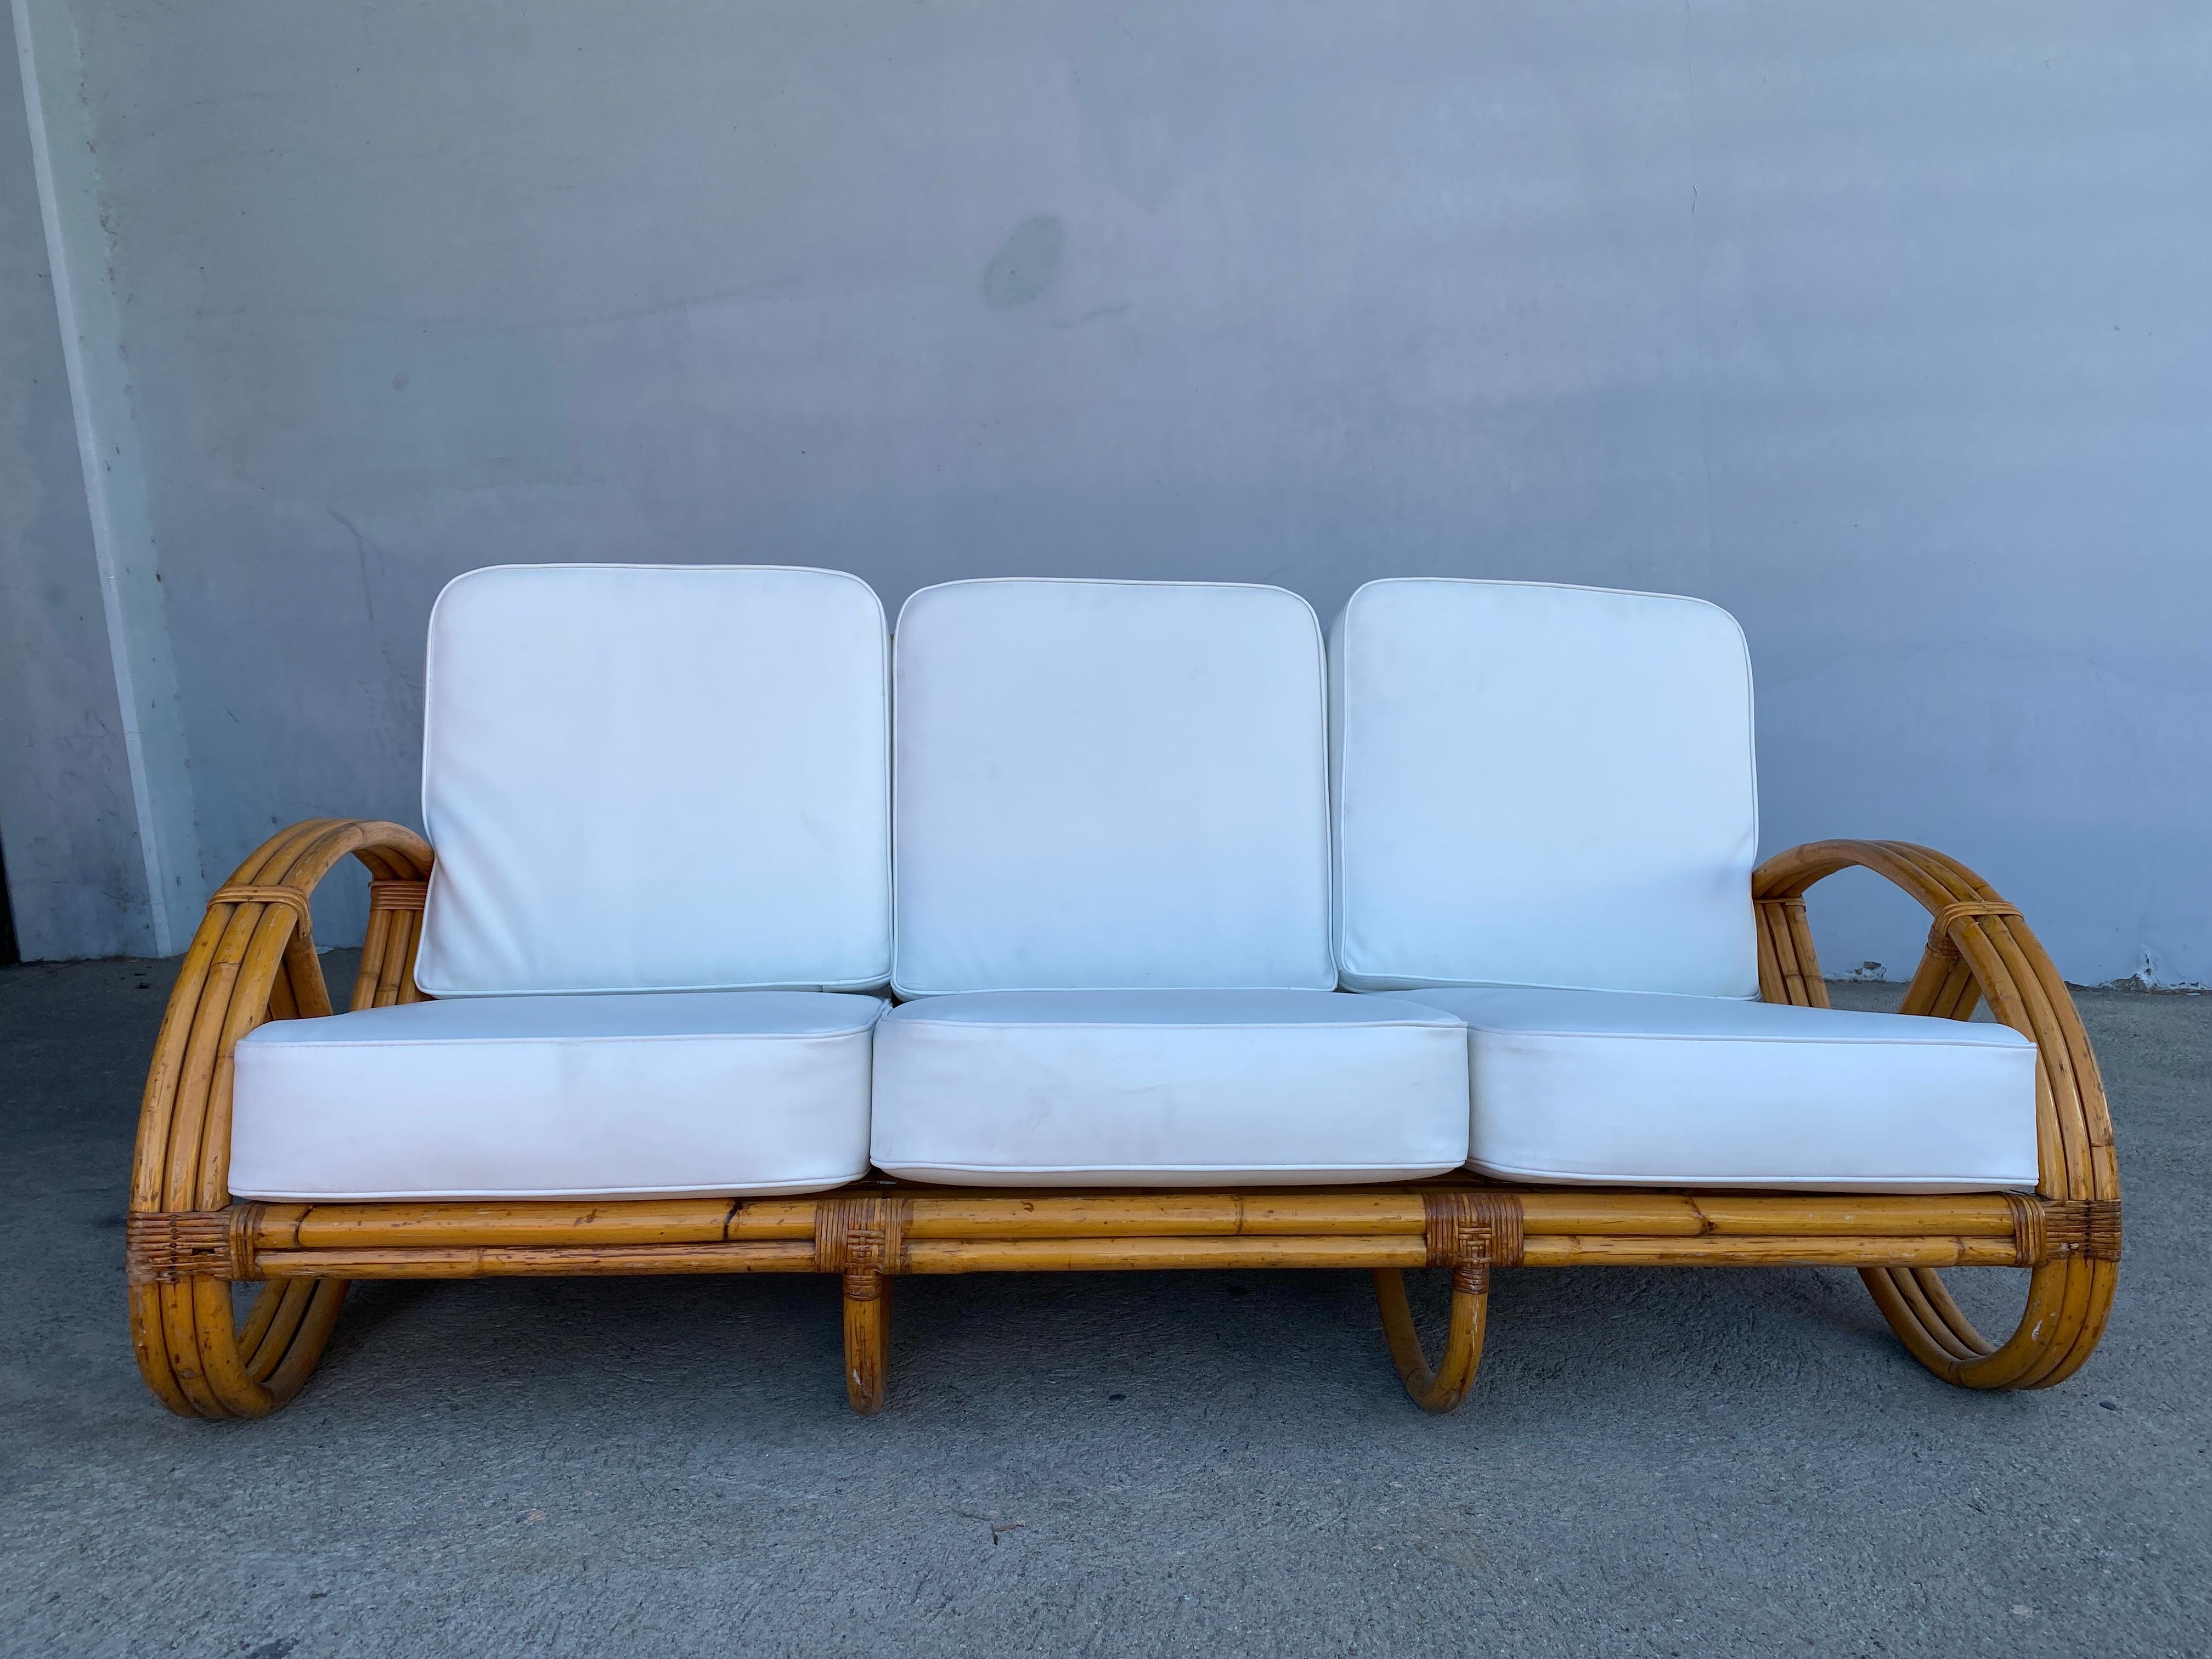 Dieses runde 3/4-Brezel-4-Sitzer-Sofa mit dreifach gerundeten Brezel-Armen und offenem Gestell.

Für Sie wie neu restauriert. 
 
Tropical Sun Rattan wurde 1934 am 117 West Colorado Blvd in Pasadena gegründet. Bis 1938 hatten wir